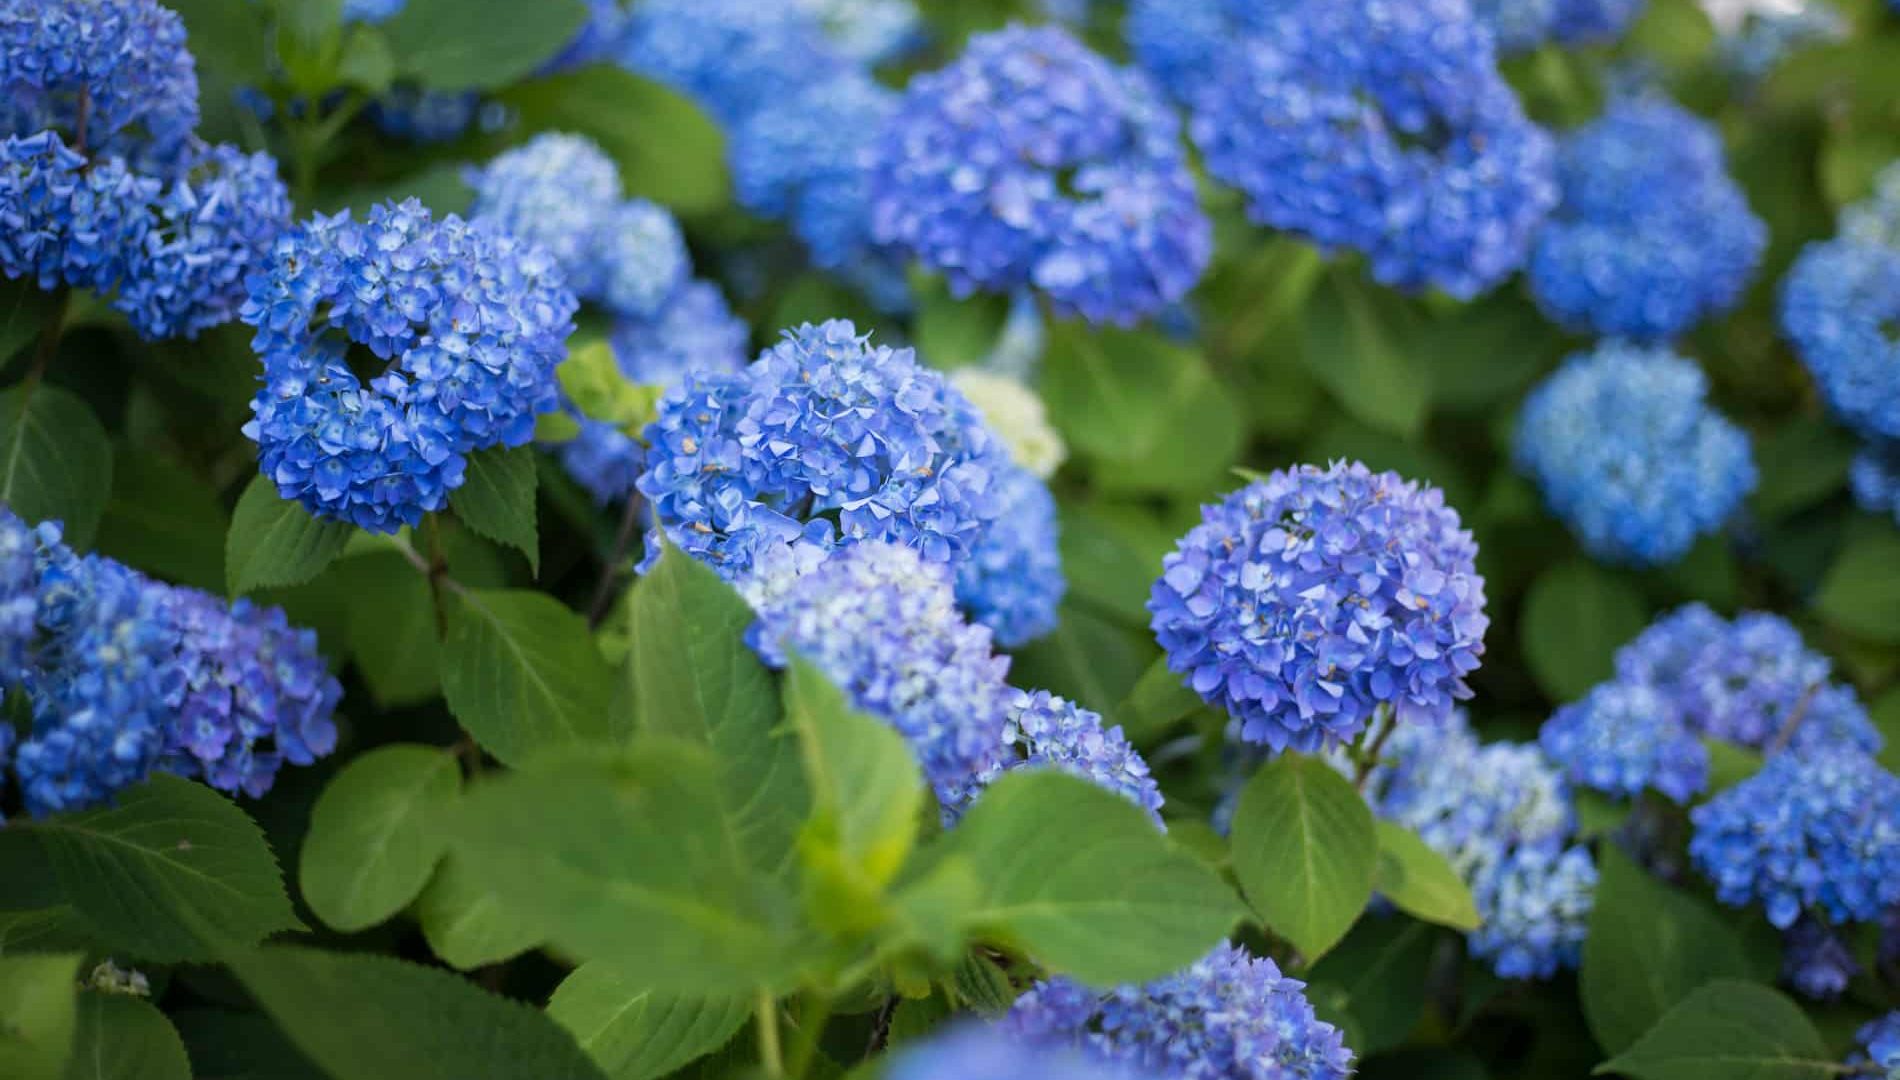 Blue Hydrangea in full bloom